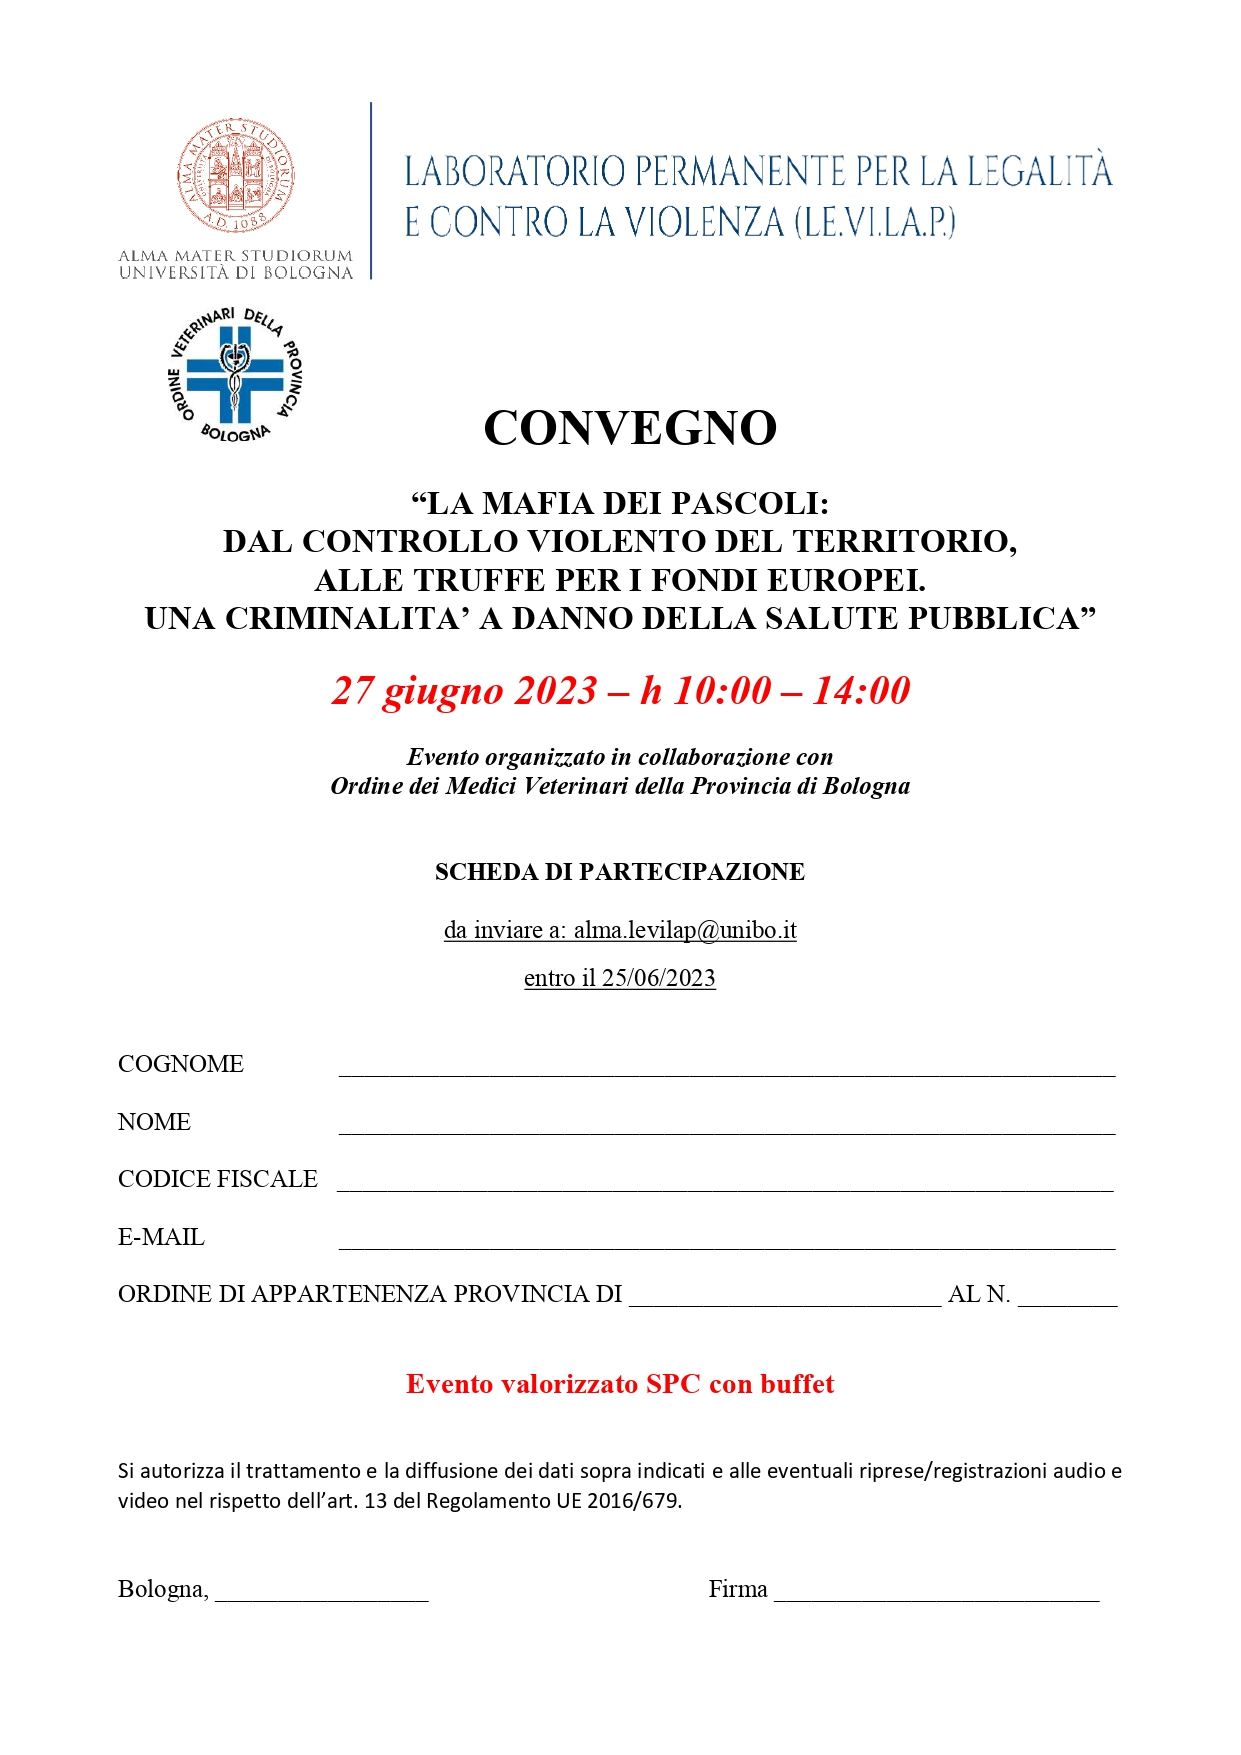 Scheda di partecipazione al convegno per ordine dei Medici veterinari della provincia di Bologna